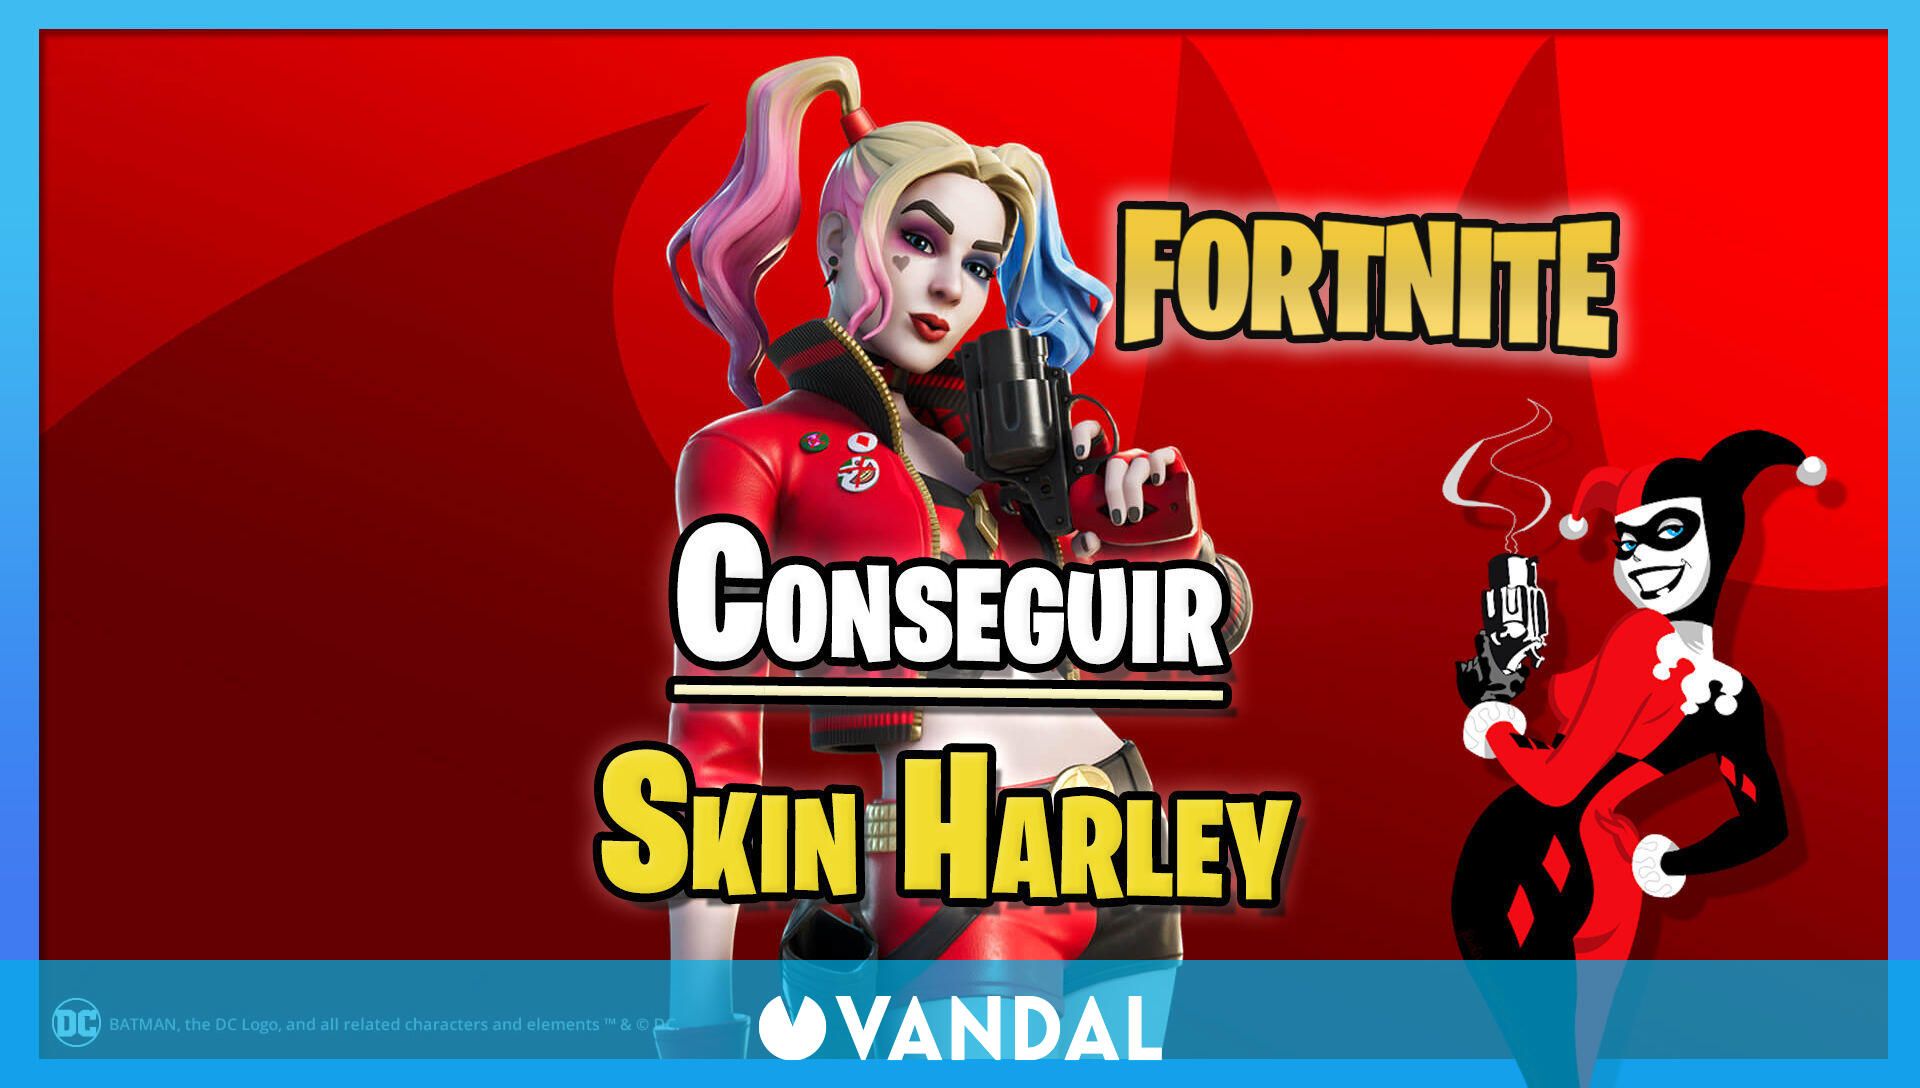 Fortnite: Cómo conseguir la skin especial de Harley Quinn renacimiento -  Vandal